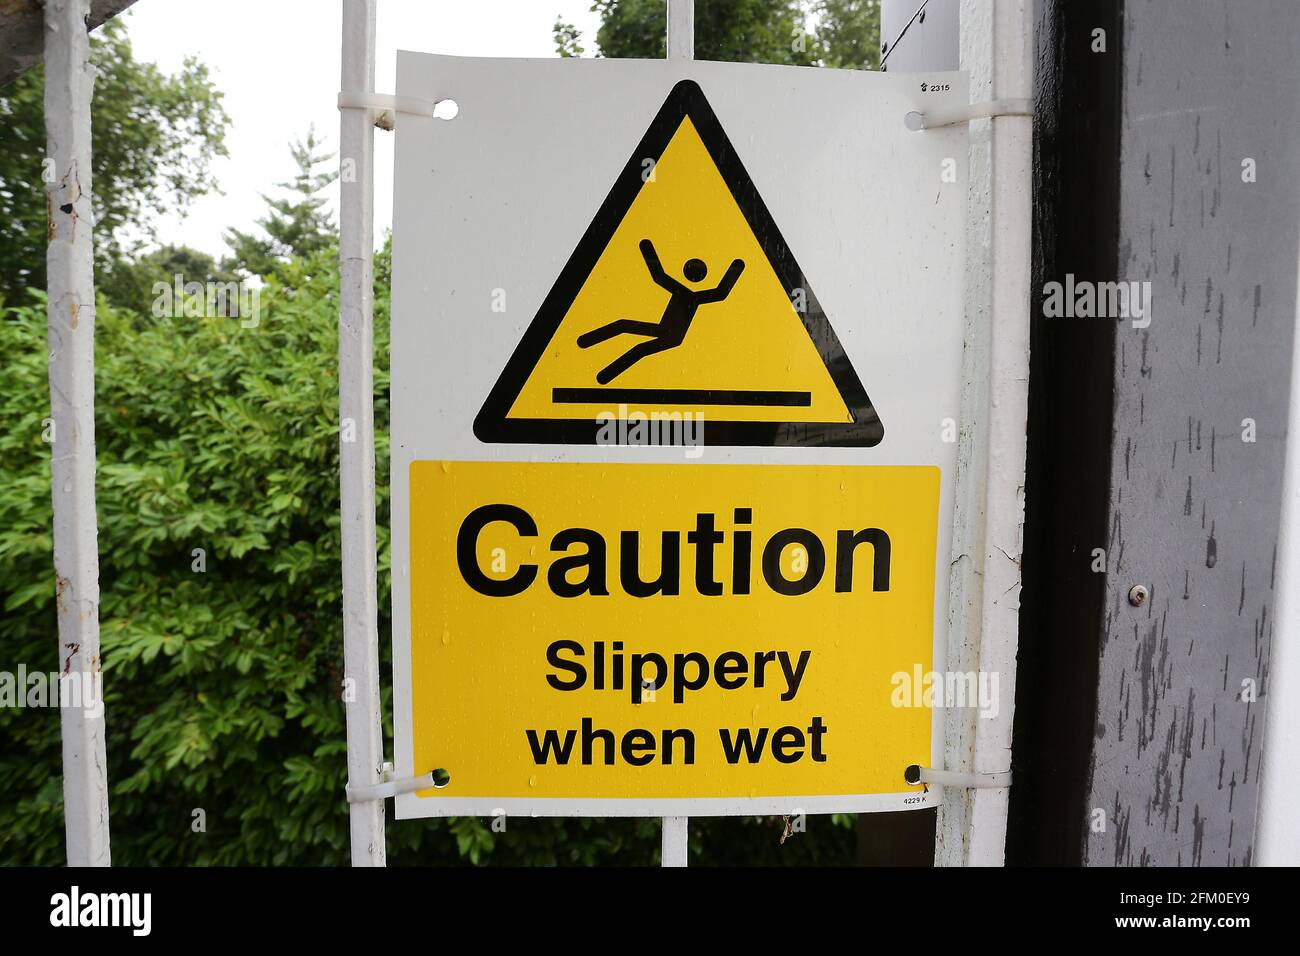 Amy in Slippery when wet!!